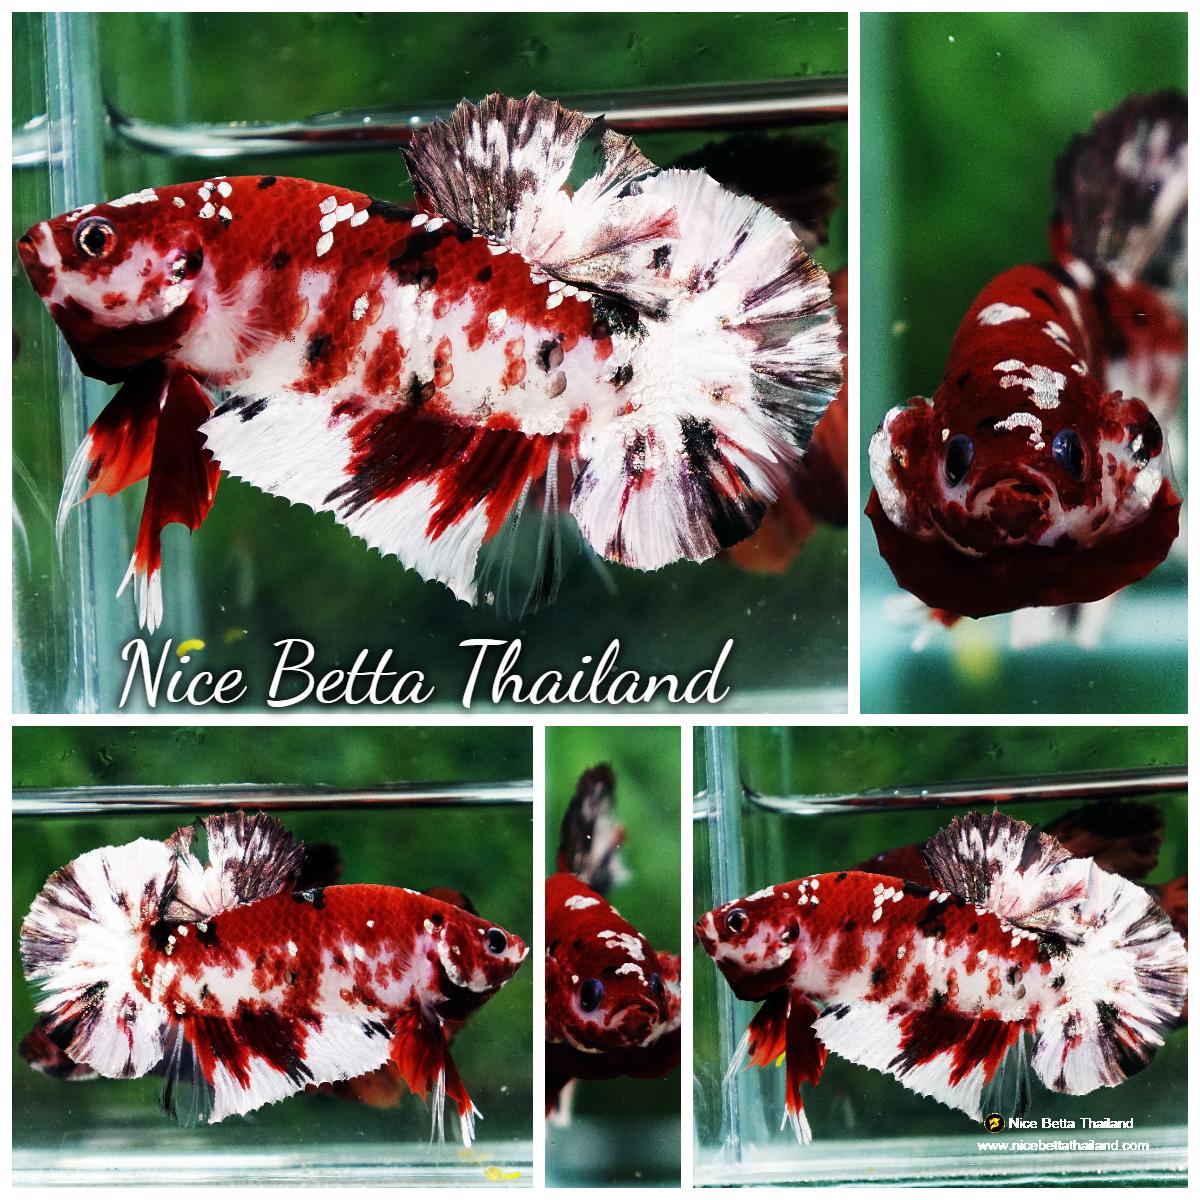 Betta fish Copper Red Koi Star HMPK